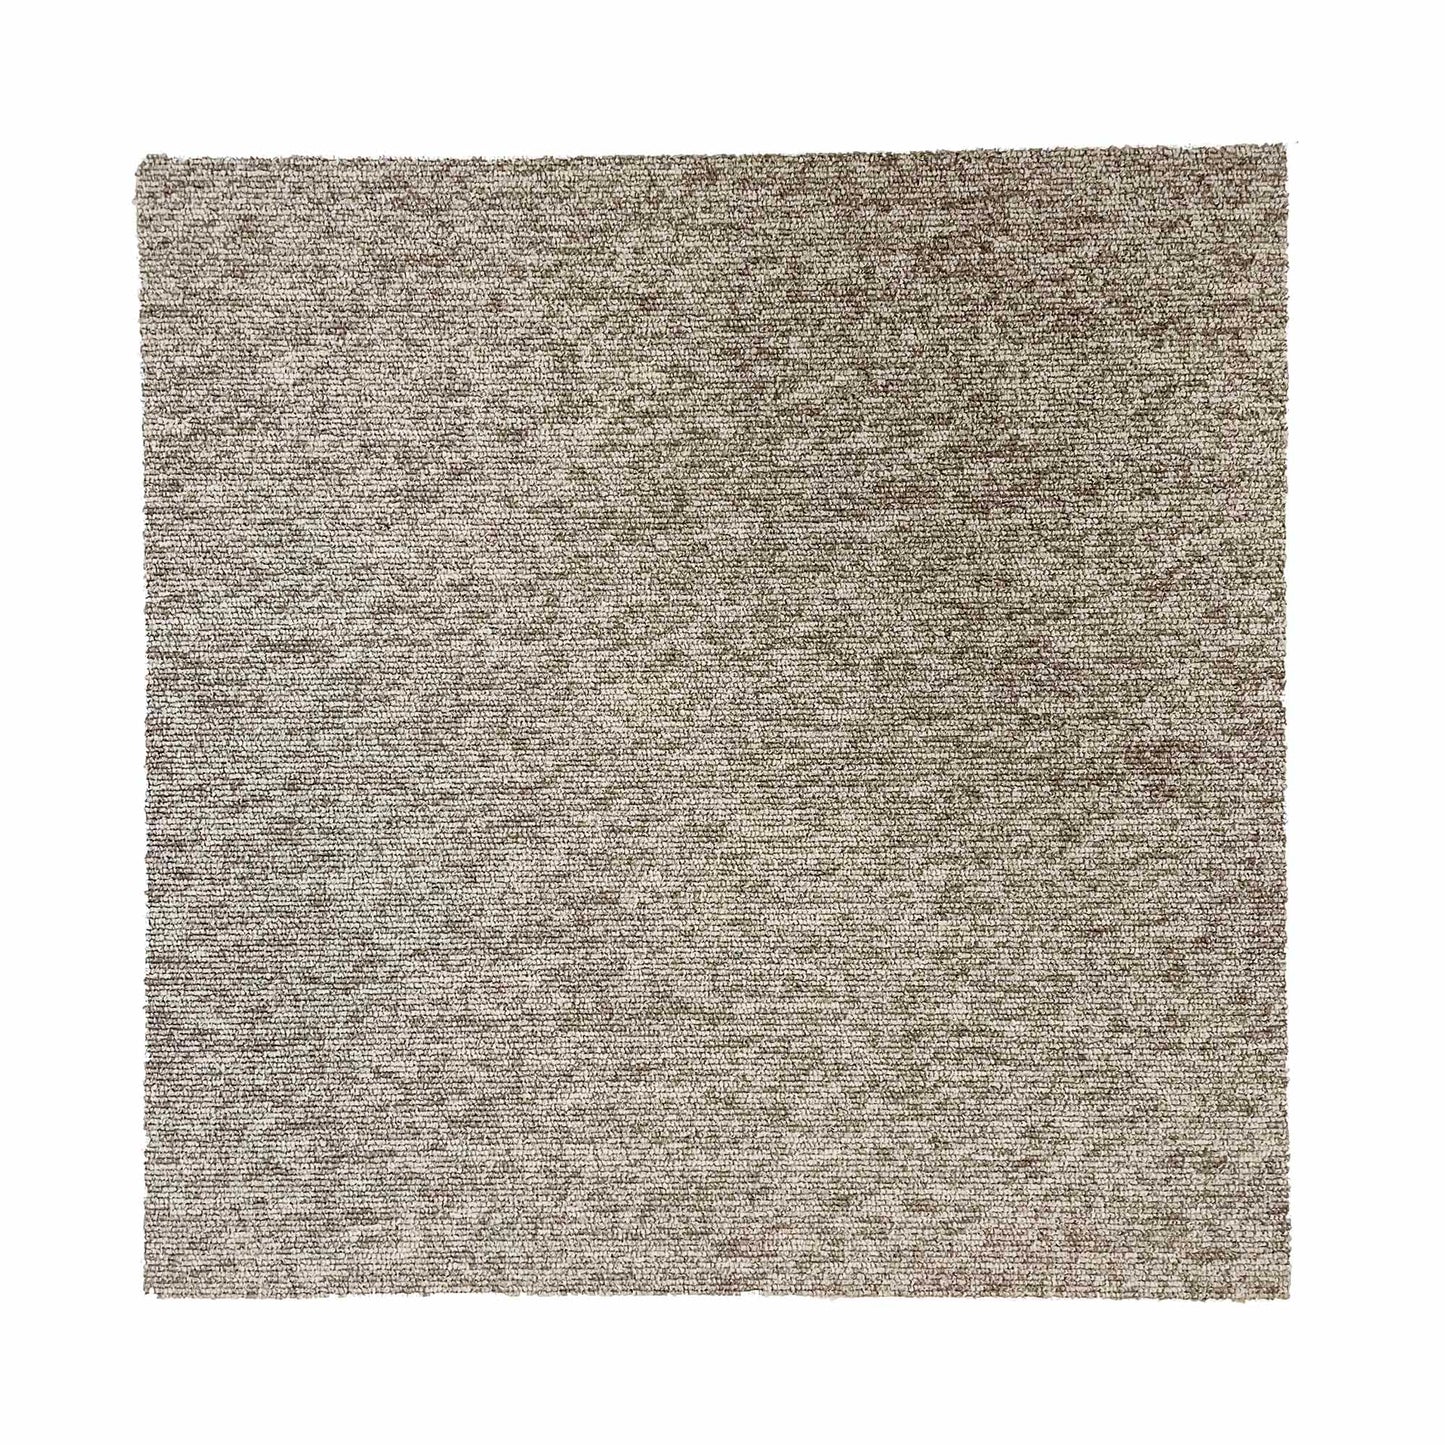 Oatmeal Carpet Tiles